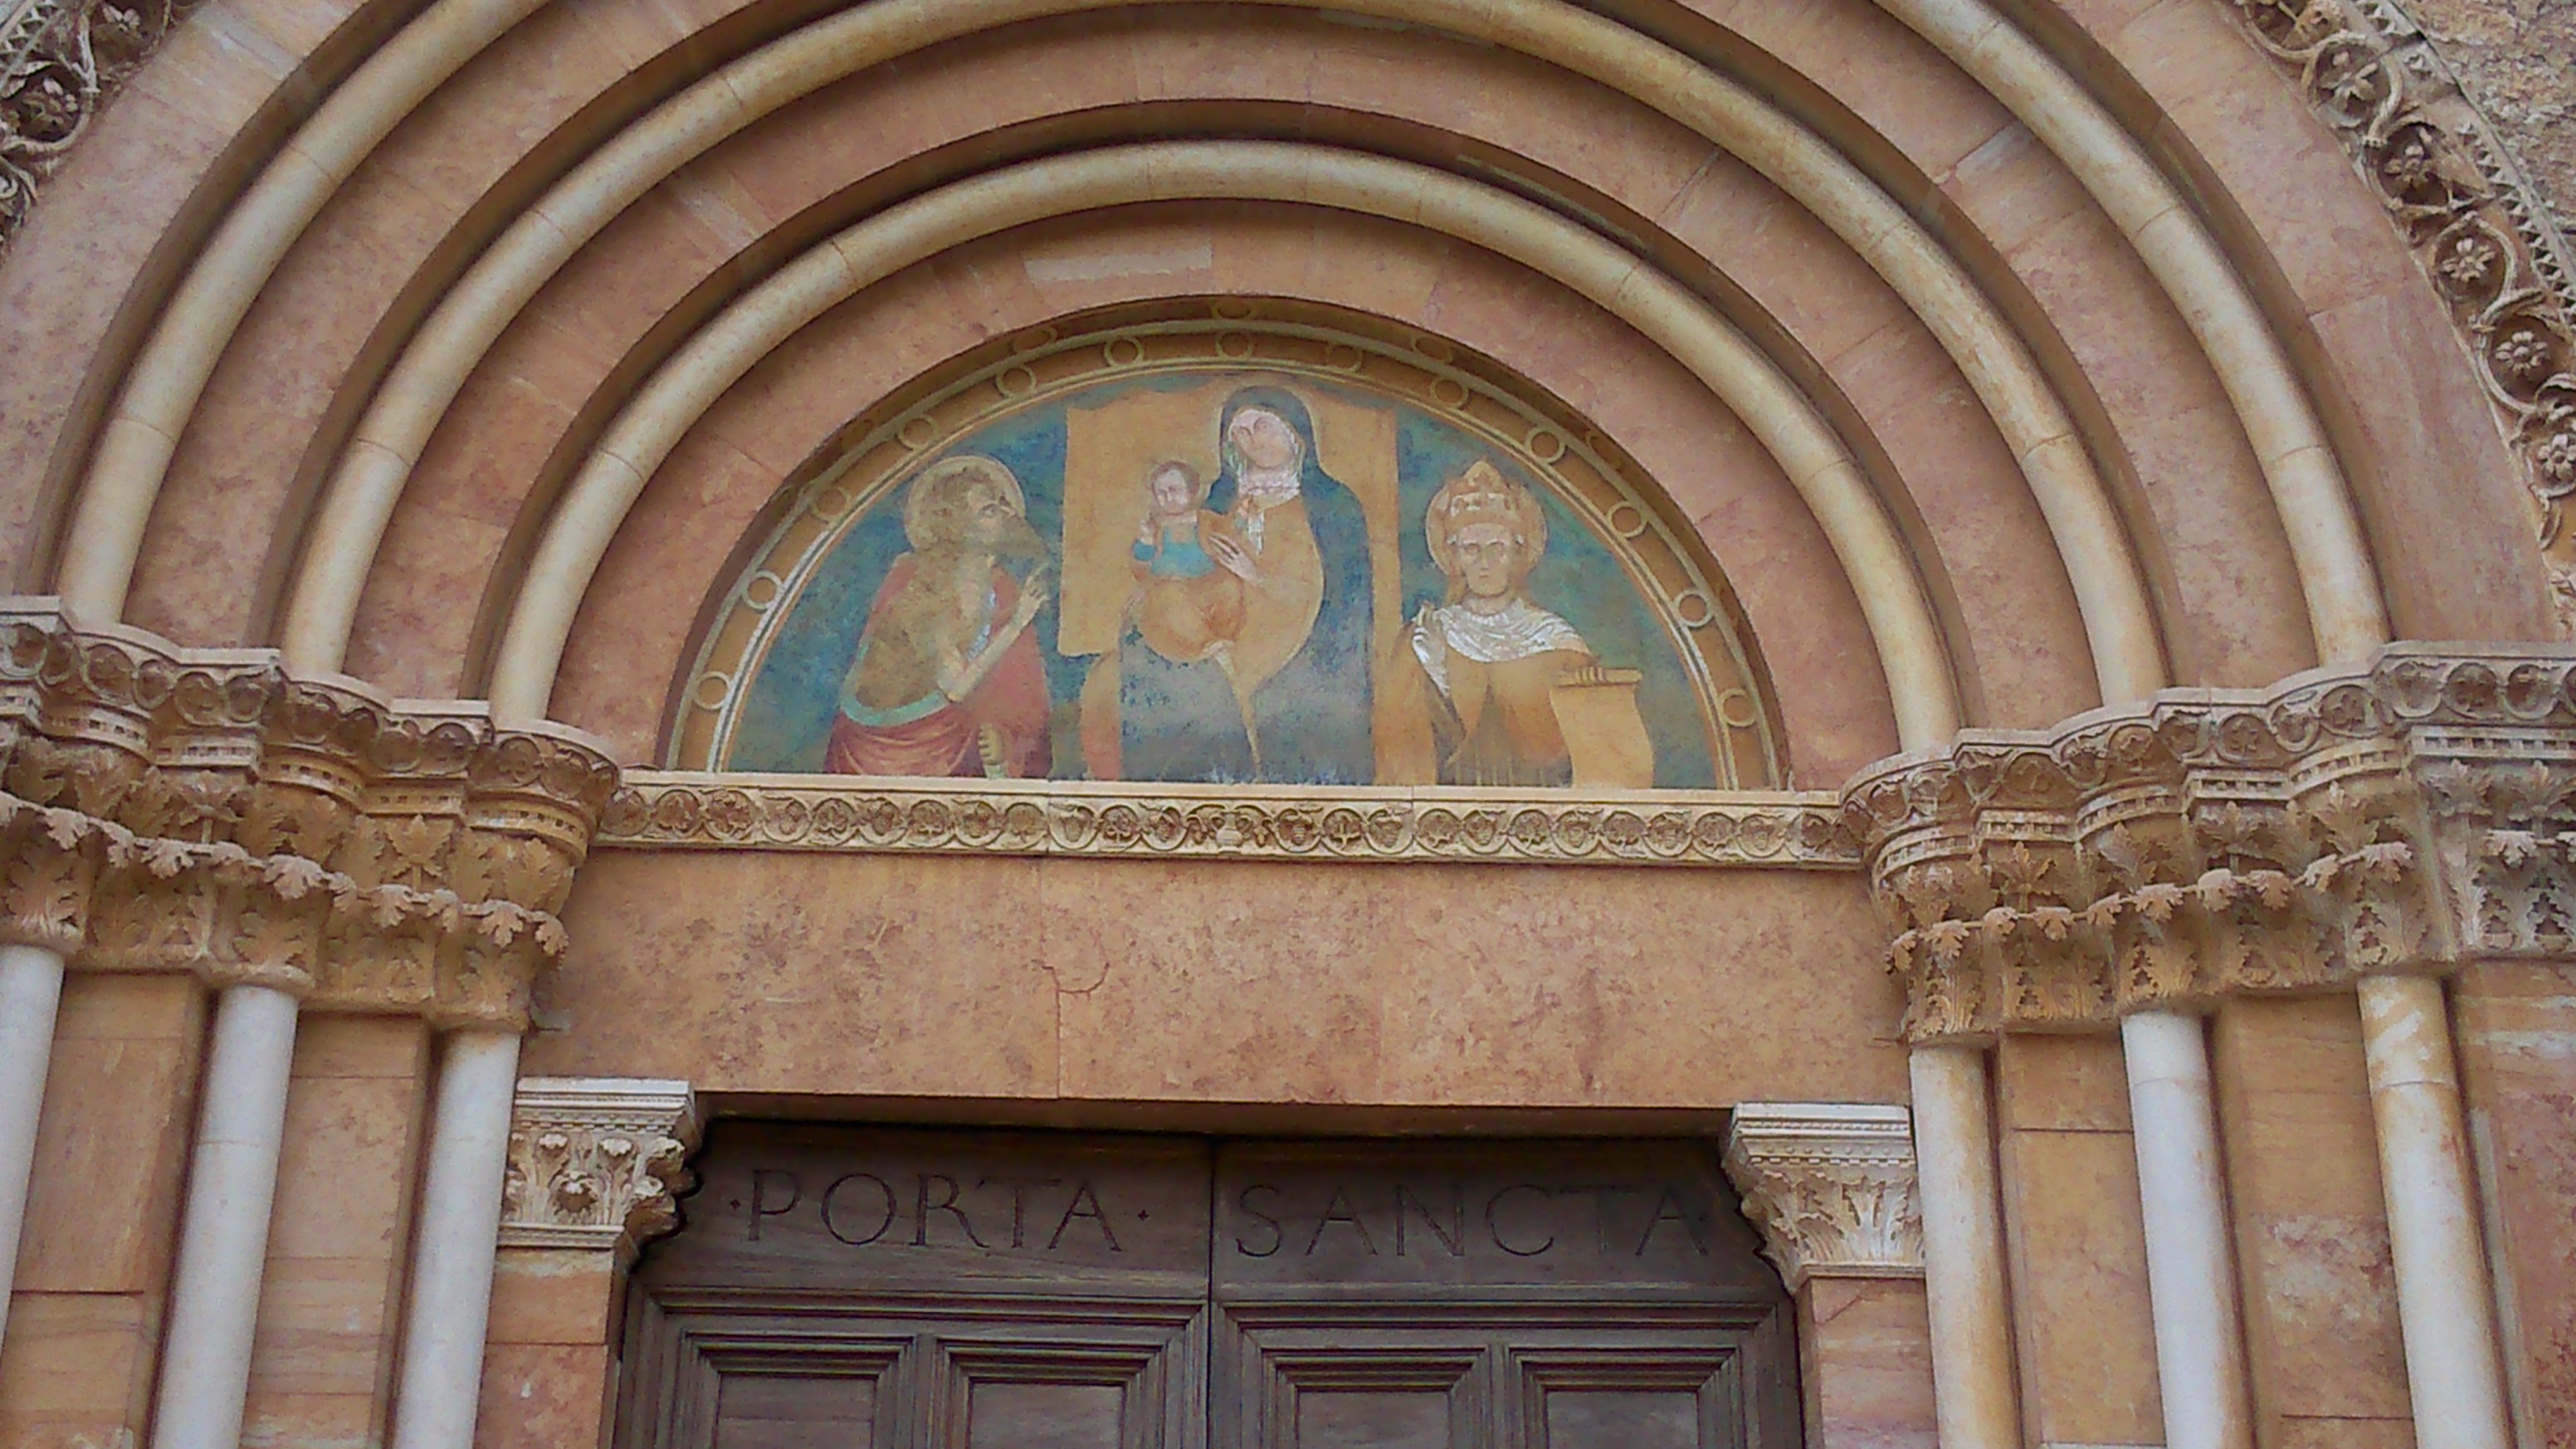 Particolare della Porta Santa della basilica di Santa Maria di Collemaggio a L'Aquila.